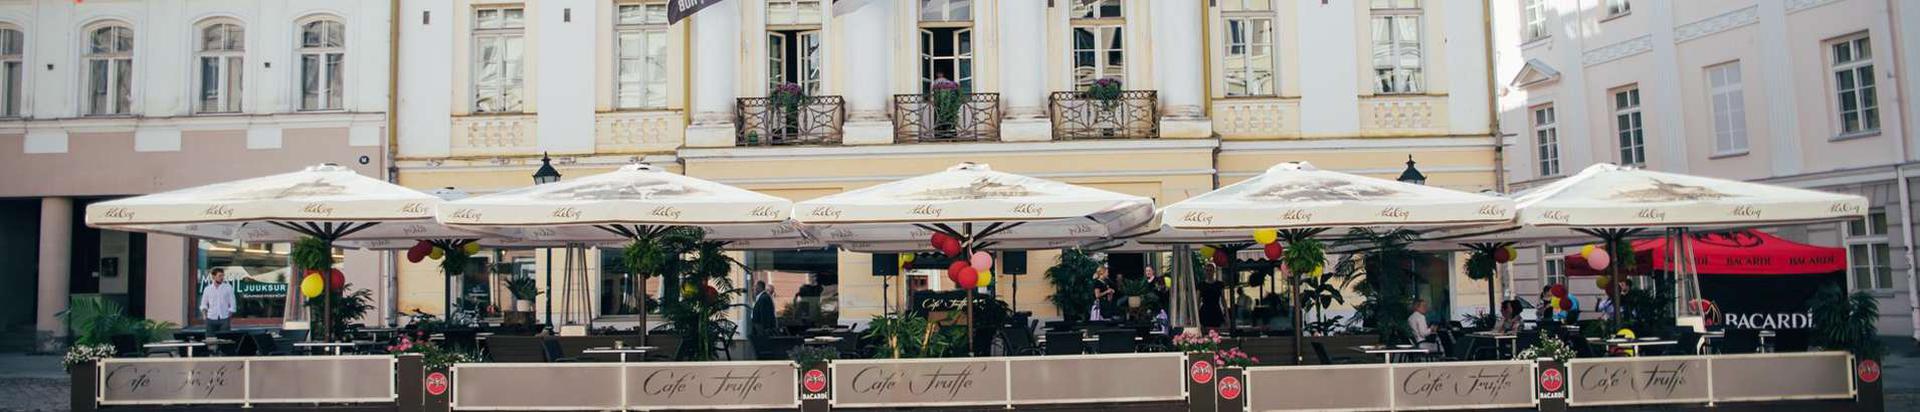 Auhinnatud kohvik Cafe Truffe on sümbioos suurepärasest teenindusest, kordumatust maitsest vahemereköögis, rikkalikest kokteilidest –ja veinivalikust. Tule ja naudi!